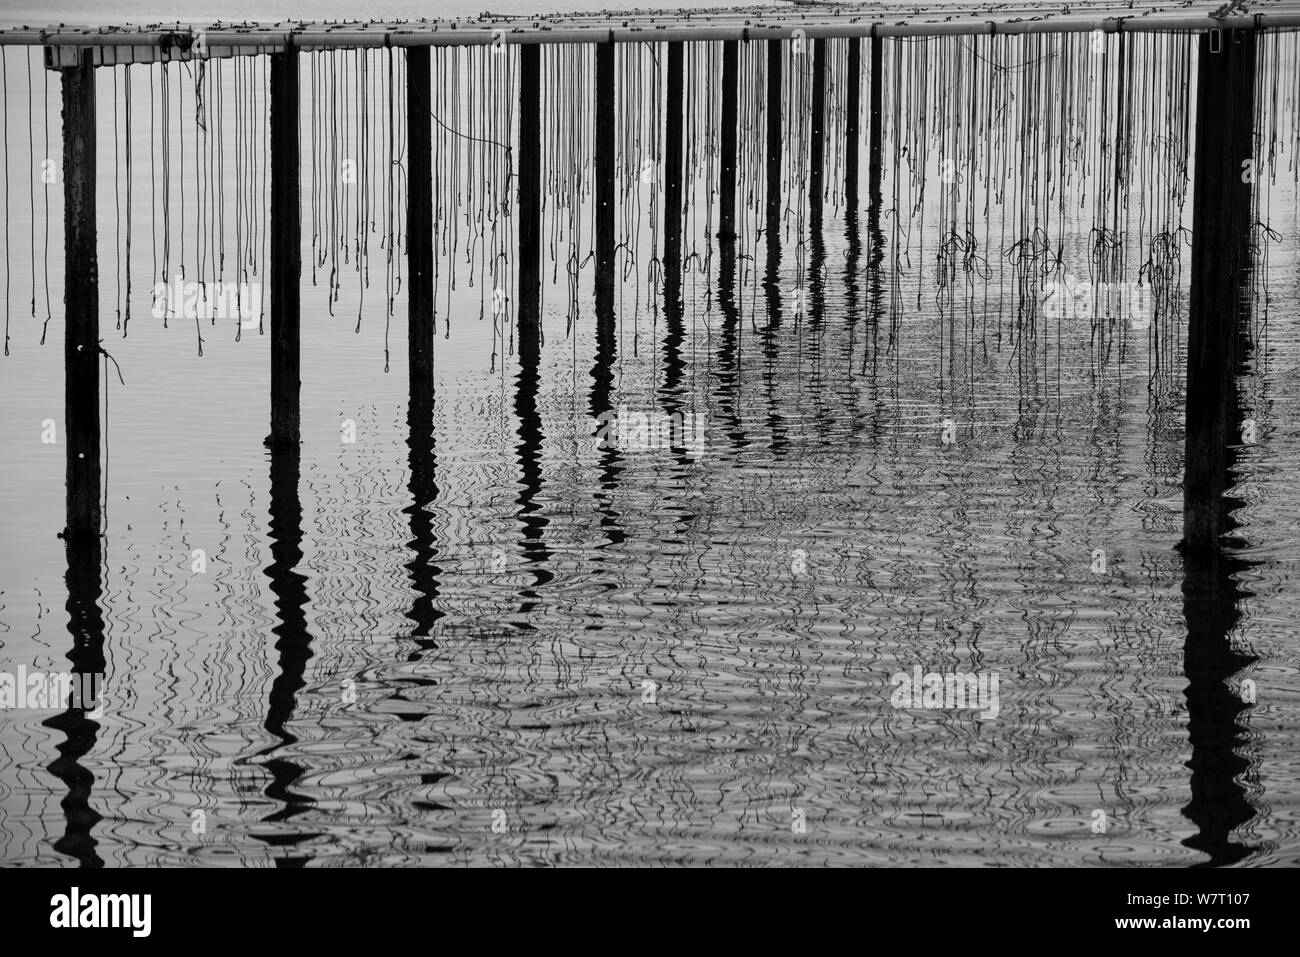 Reflets dans l'eau à la mytiliculture dans la baie de Fos-sur-Mer, Camargue, France, septembre. Banque D'Images